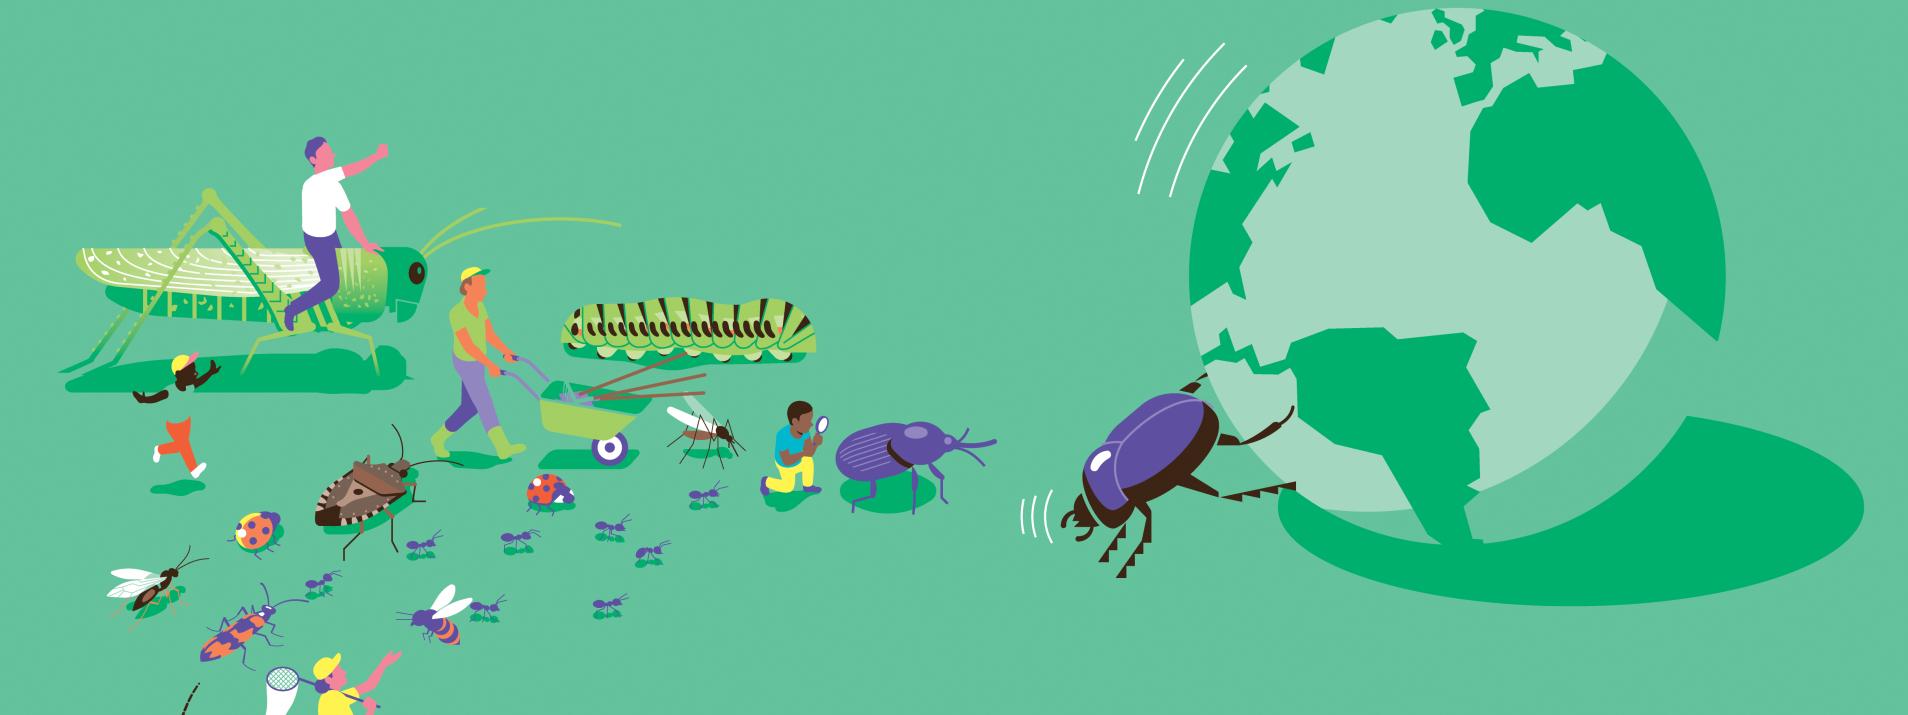 Exposition au foyer rural de Concots: Les insectes au secours de la planète